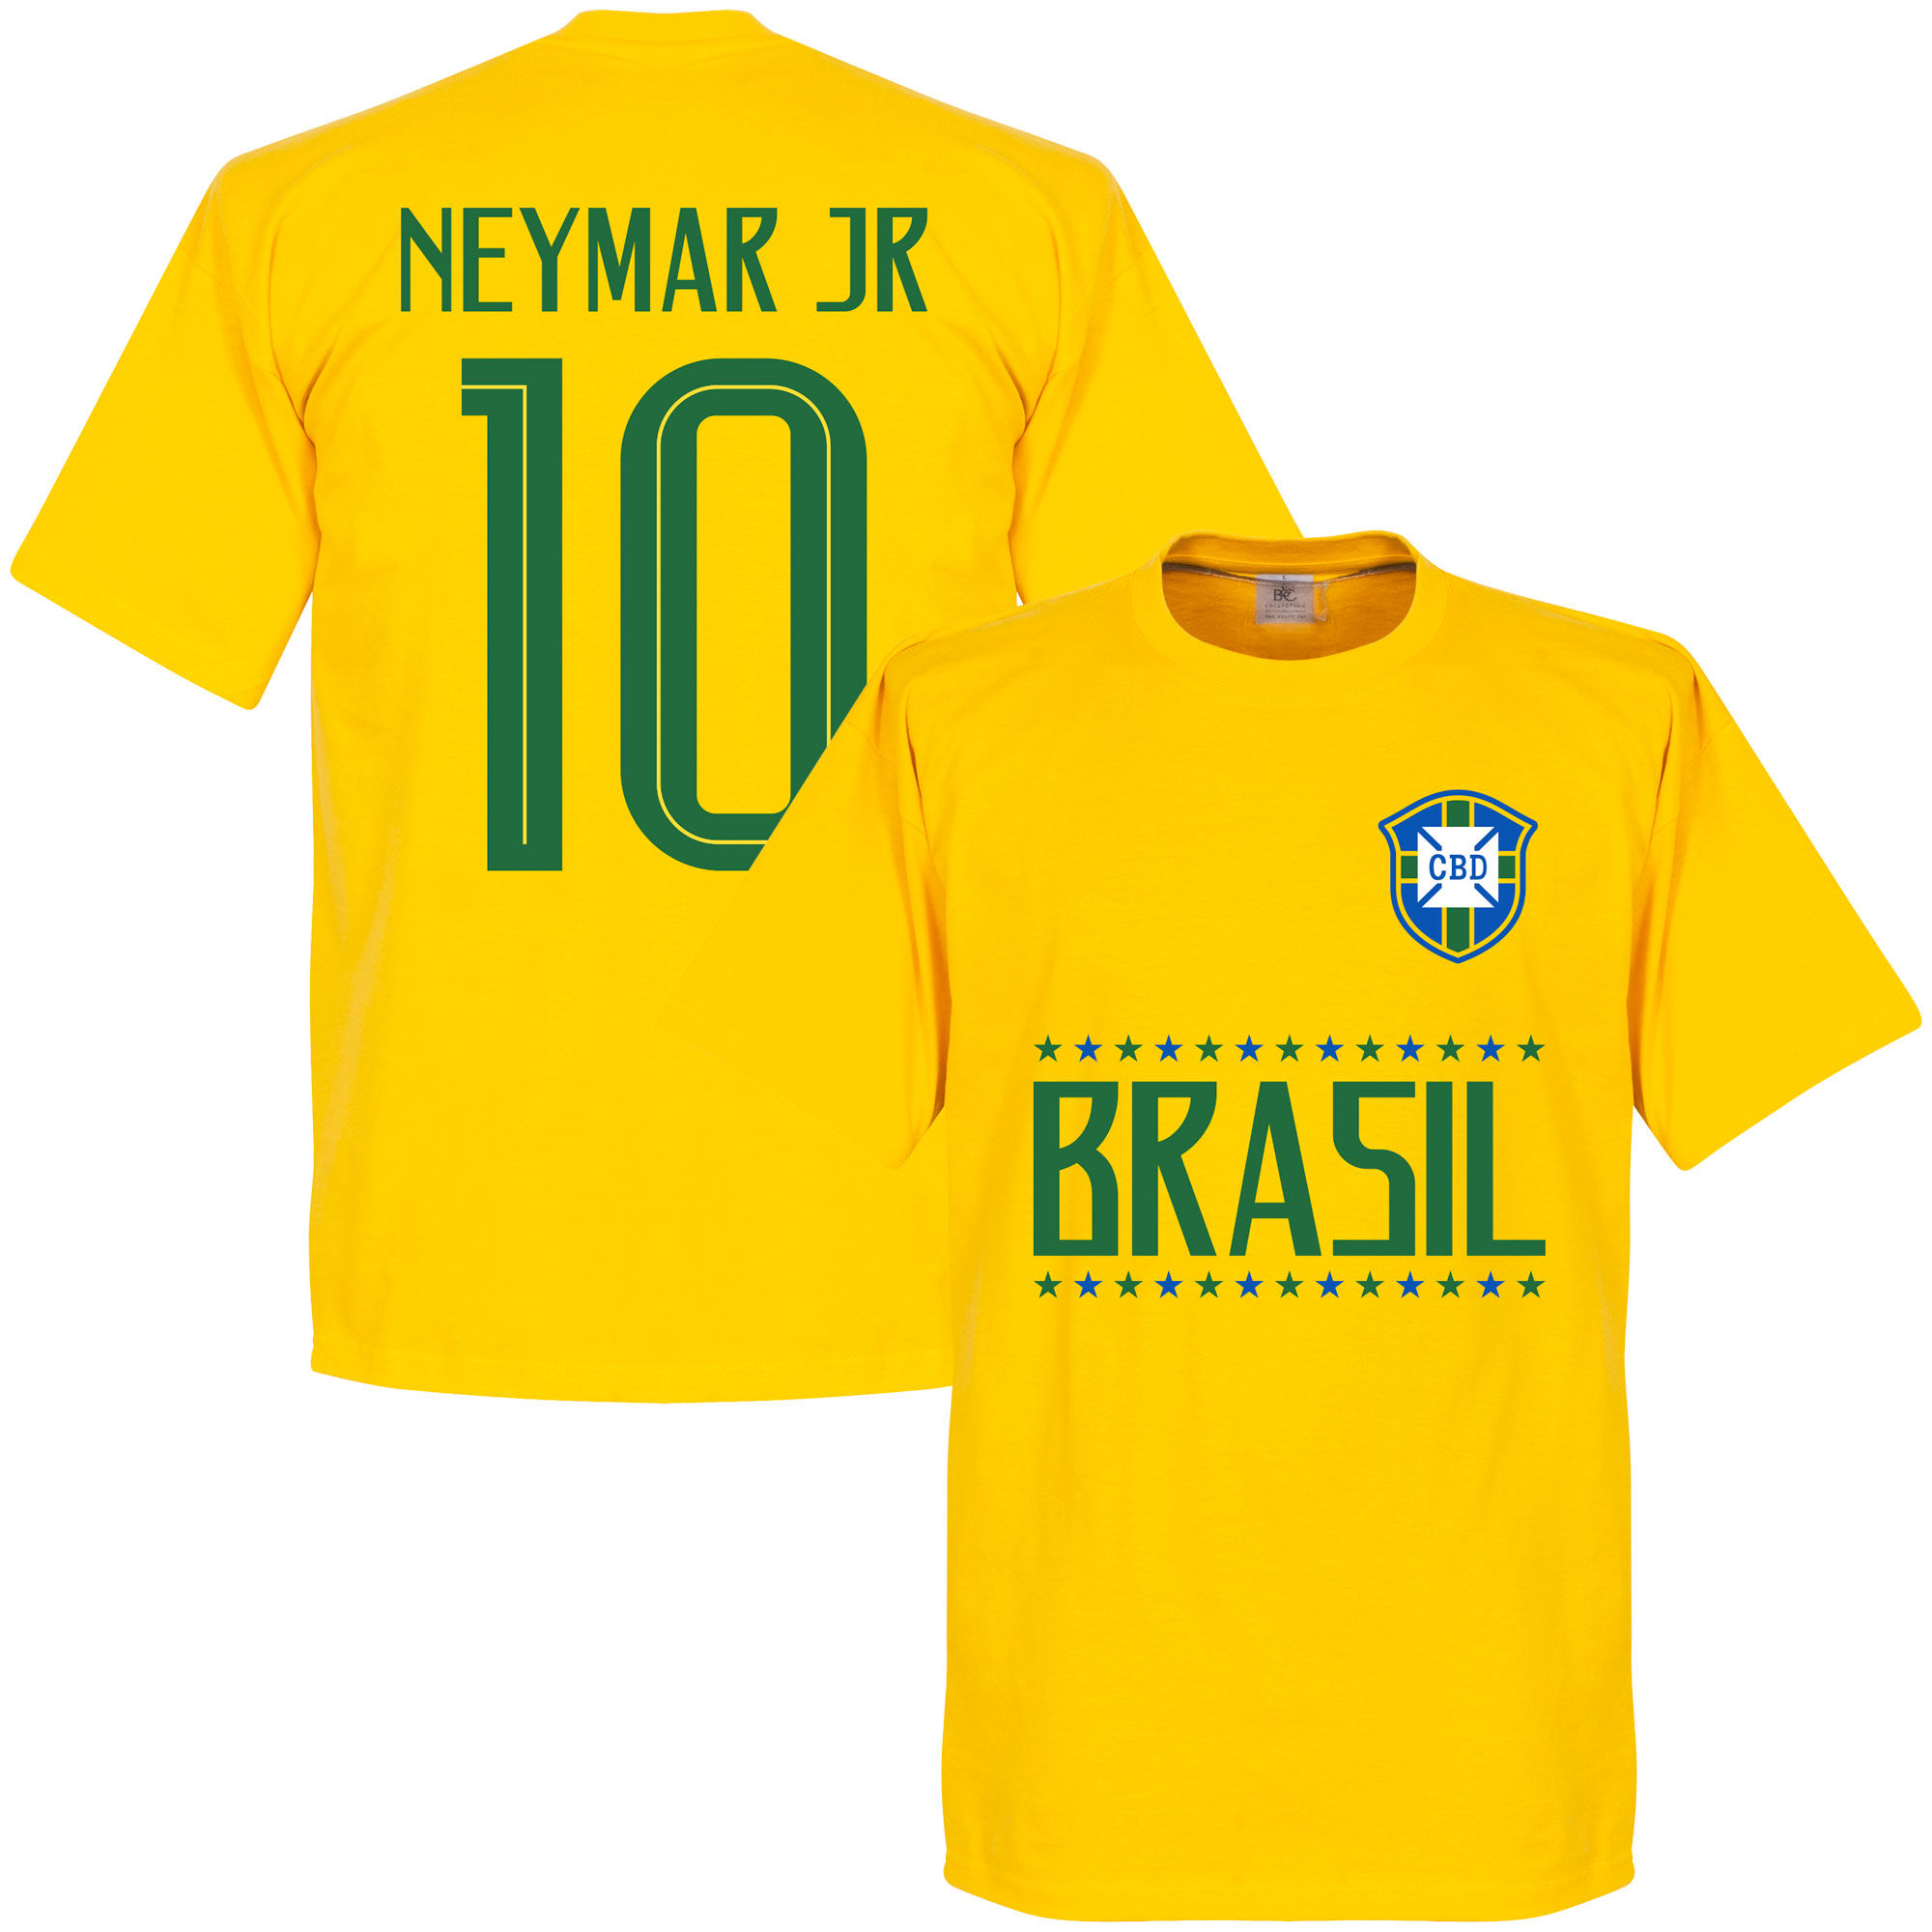 Brazílie - Tričko dětské - žluté, číslo 10, Neymar